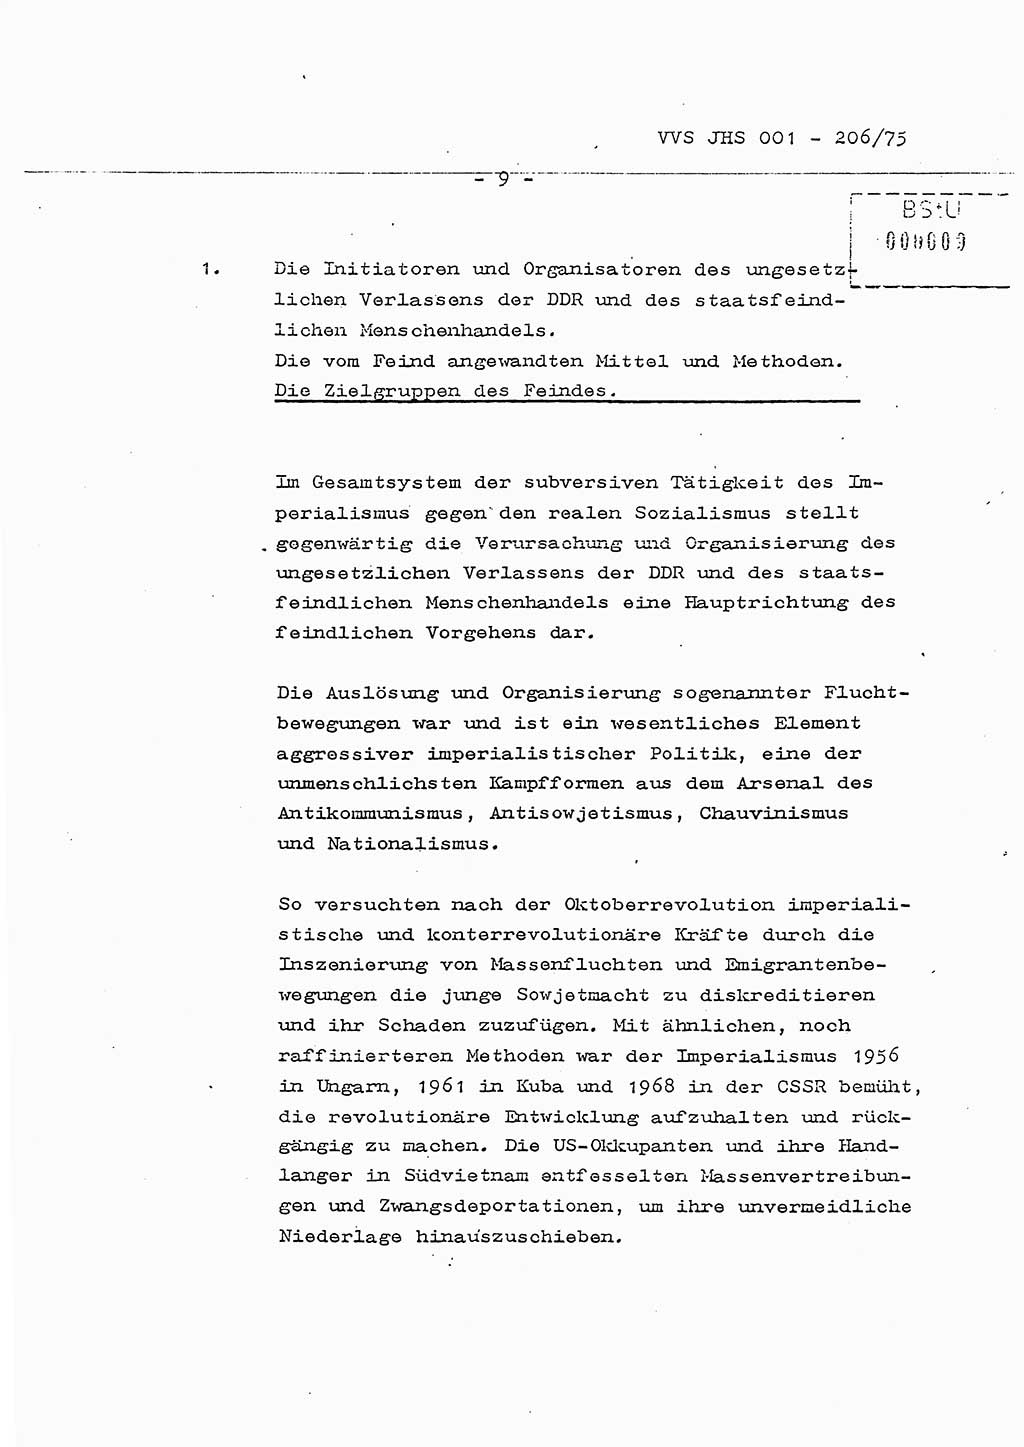 Dissertation Generalmajor Manfred Hummitzsch (Leiter der BV Leipzig), Generalmajor Heinz Fiedler (HA Ⅵ), Oberst Rolf Fister (HA Ⅸ), Ministerium für Staatssicherheit (MfS) [Deutsche Demokratische Republik (DDR)], Juristische Hochschule (JHS), Vertrauliche Verschlußsache (VVS) 001-206/75, Potsdam 1975, Seite 9 (Diss. MfS DDR JHS VVS 001-206/75 1975, S. 9)